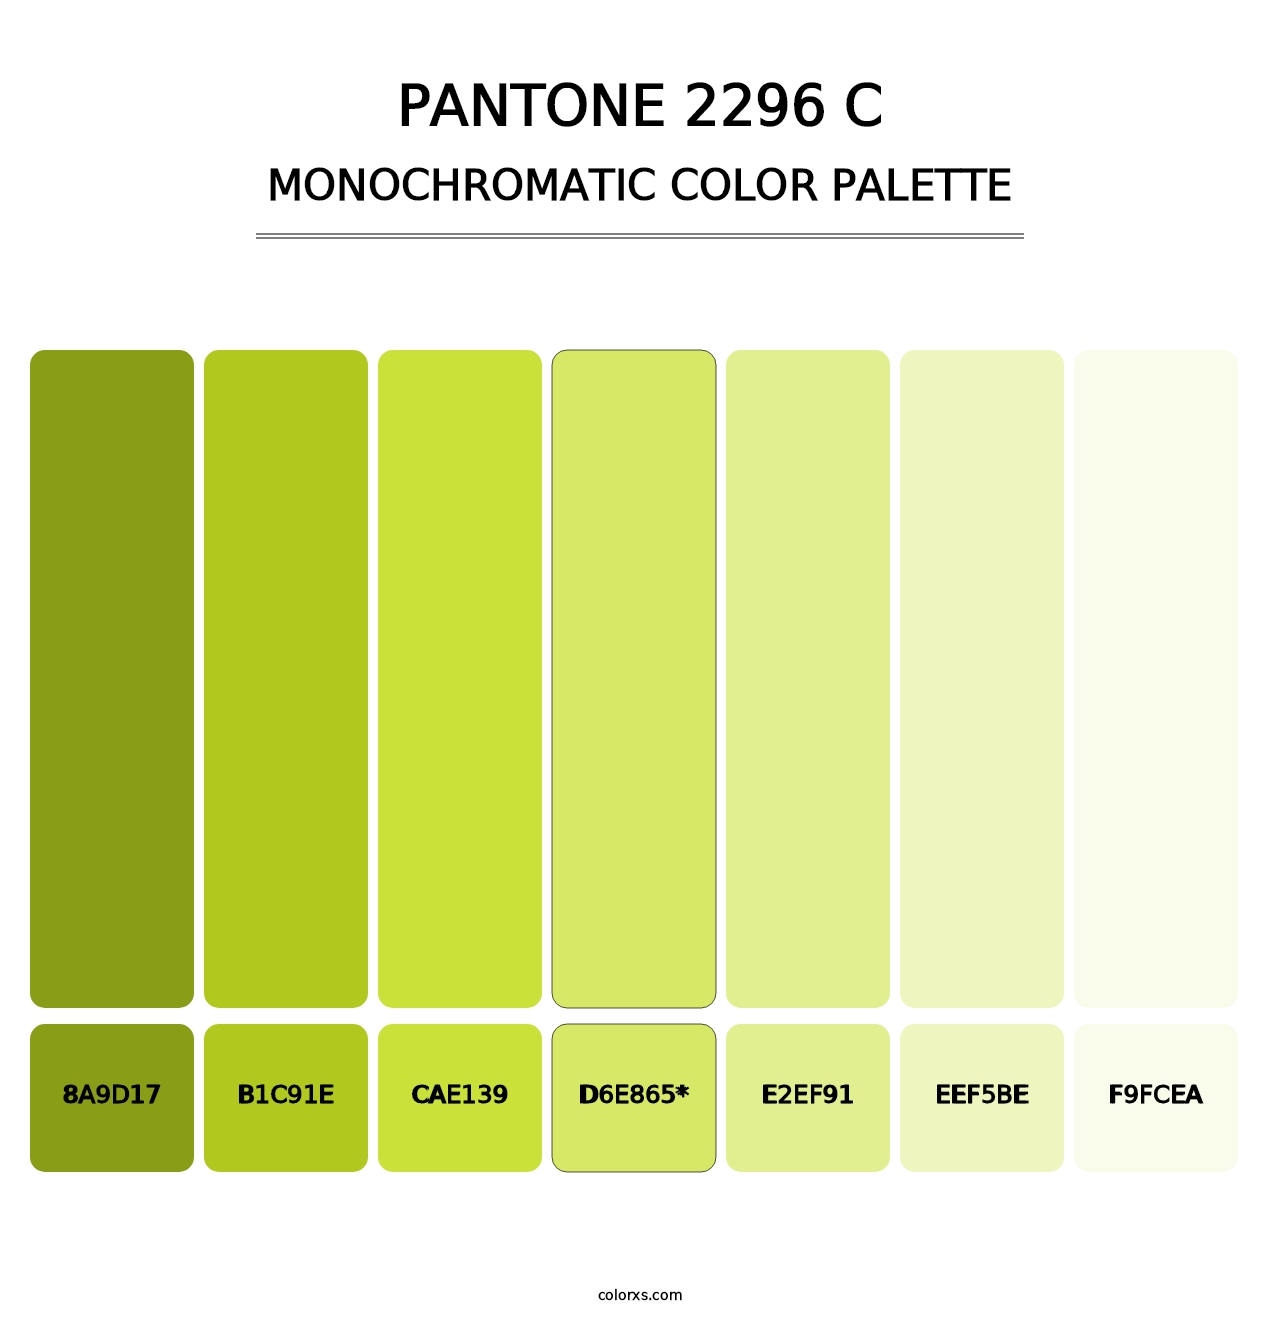 PANTONE 2296 C - Monochromatic Color Palette